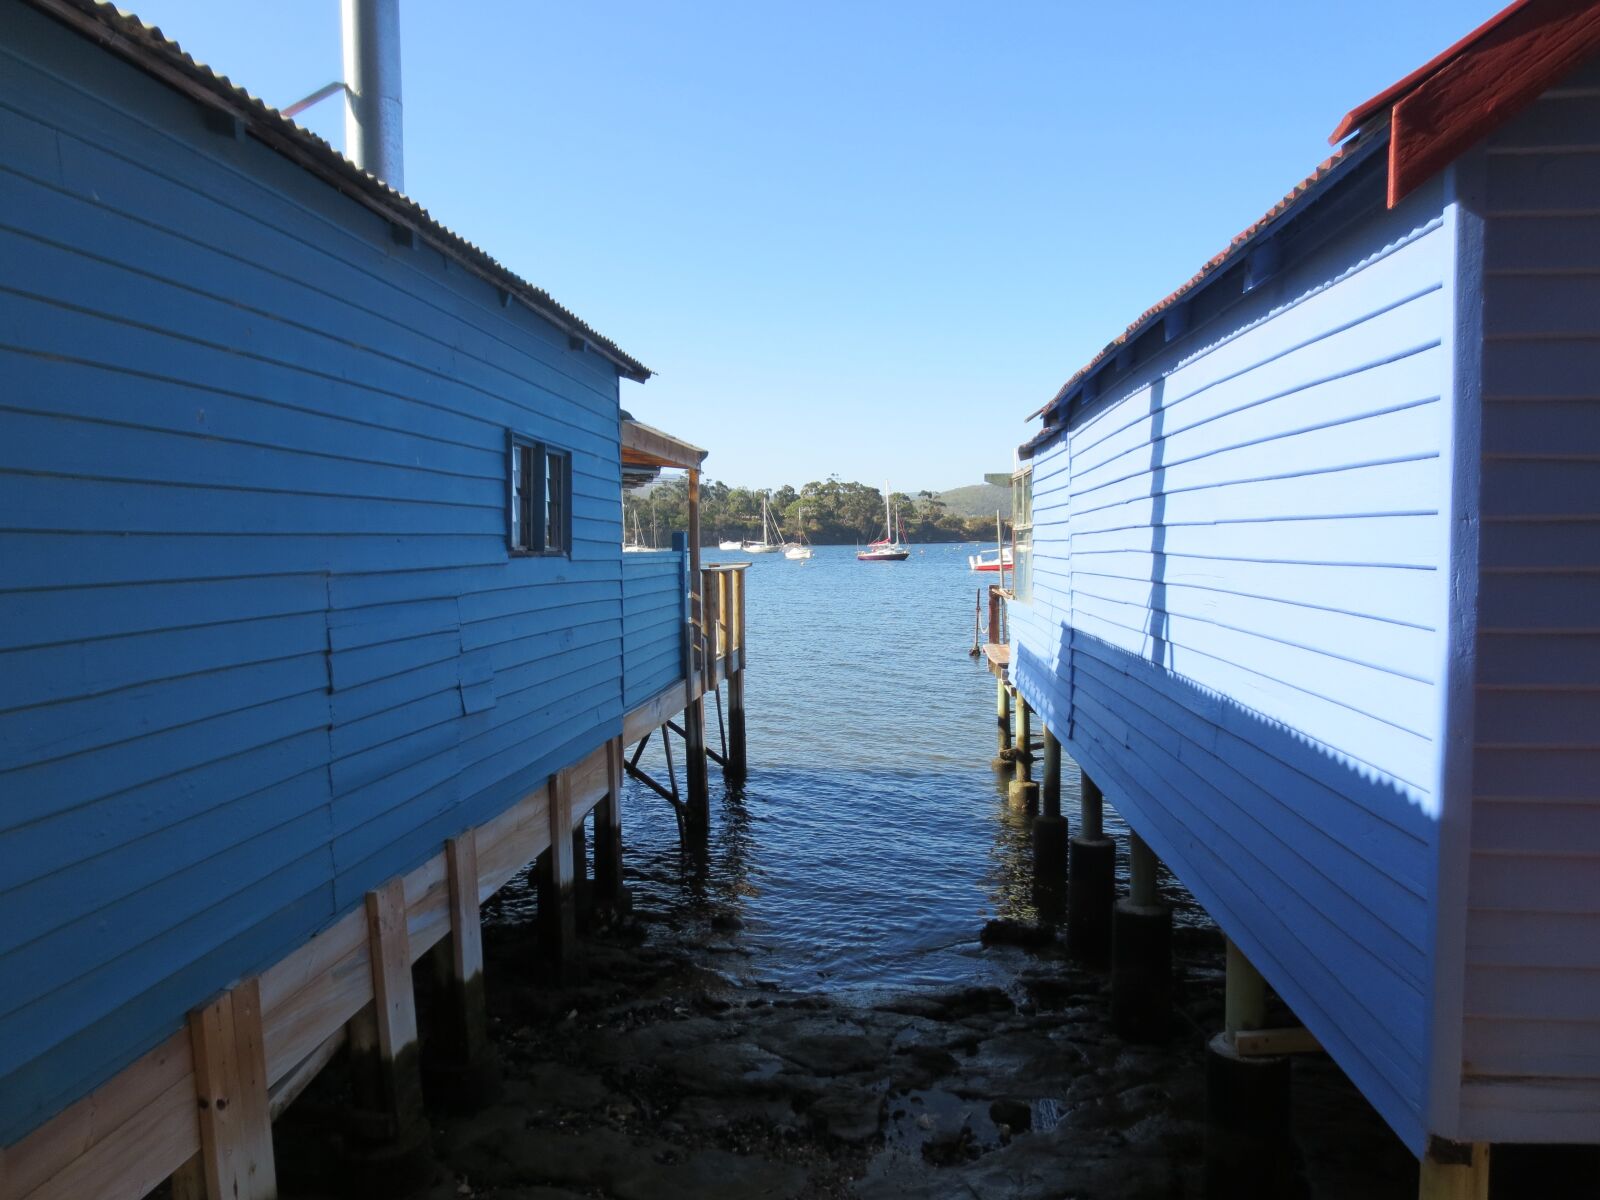 Canon IXUS 240 HS sample photo. Boathouse, boathouses, waterfront photography